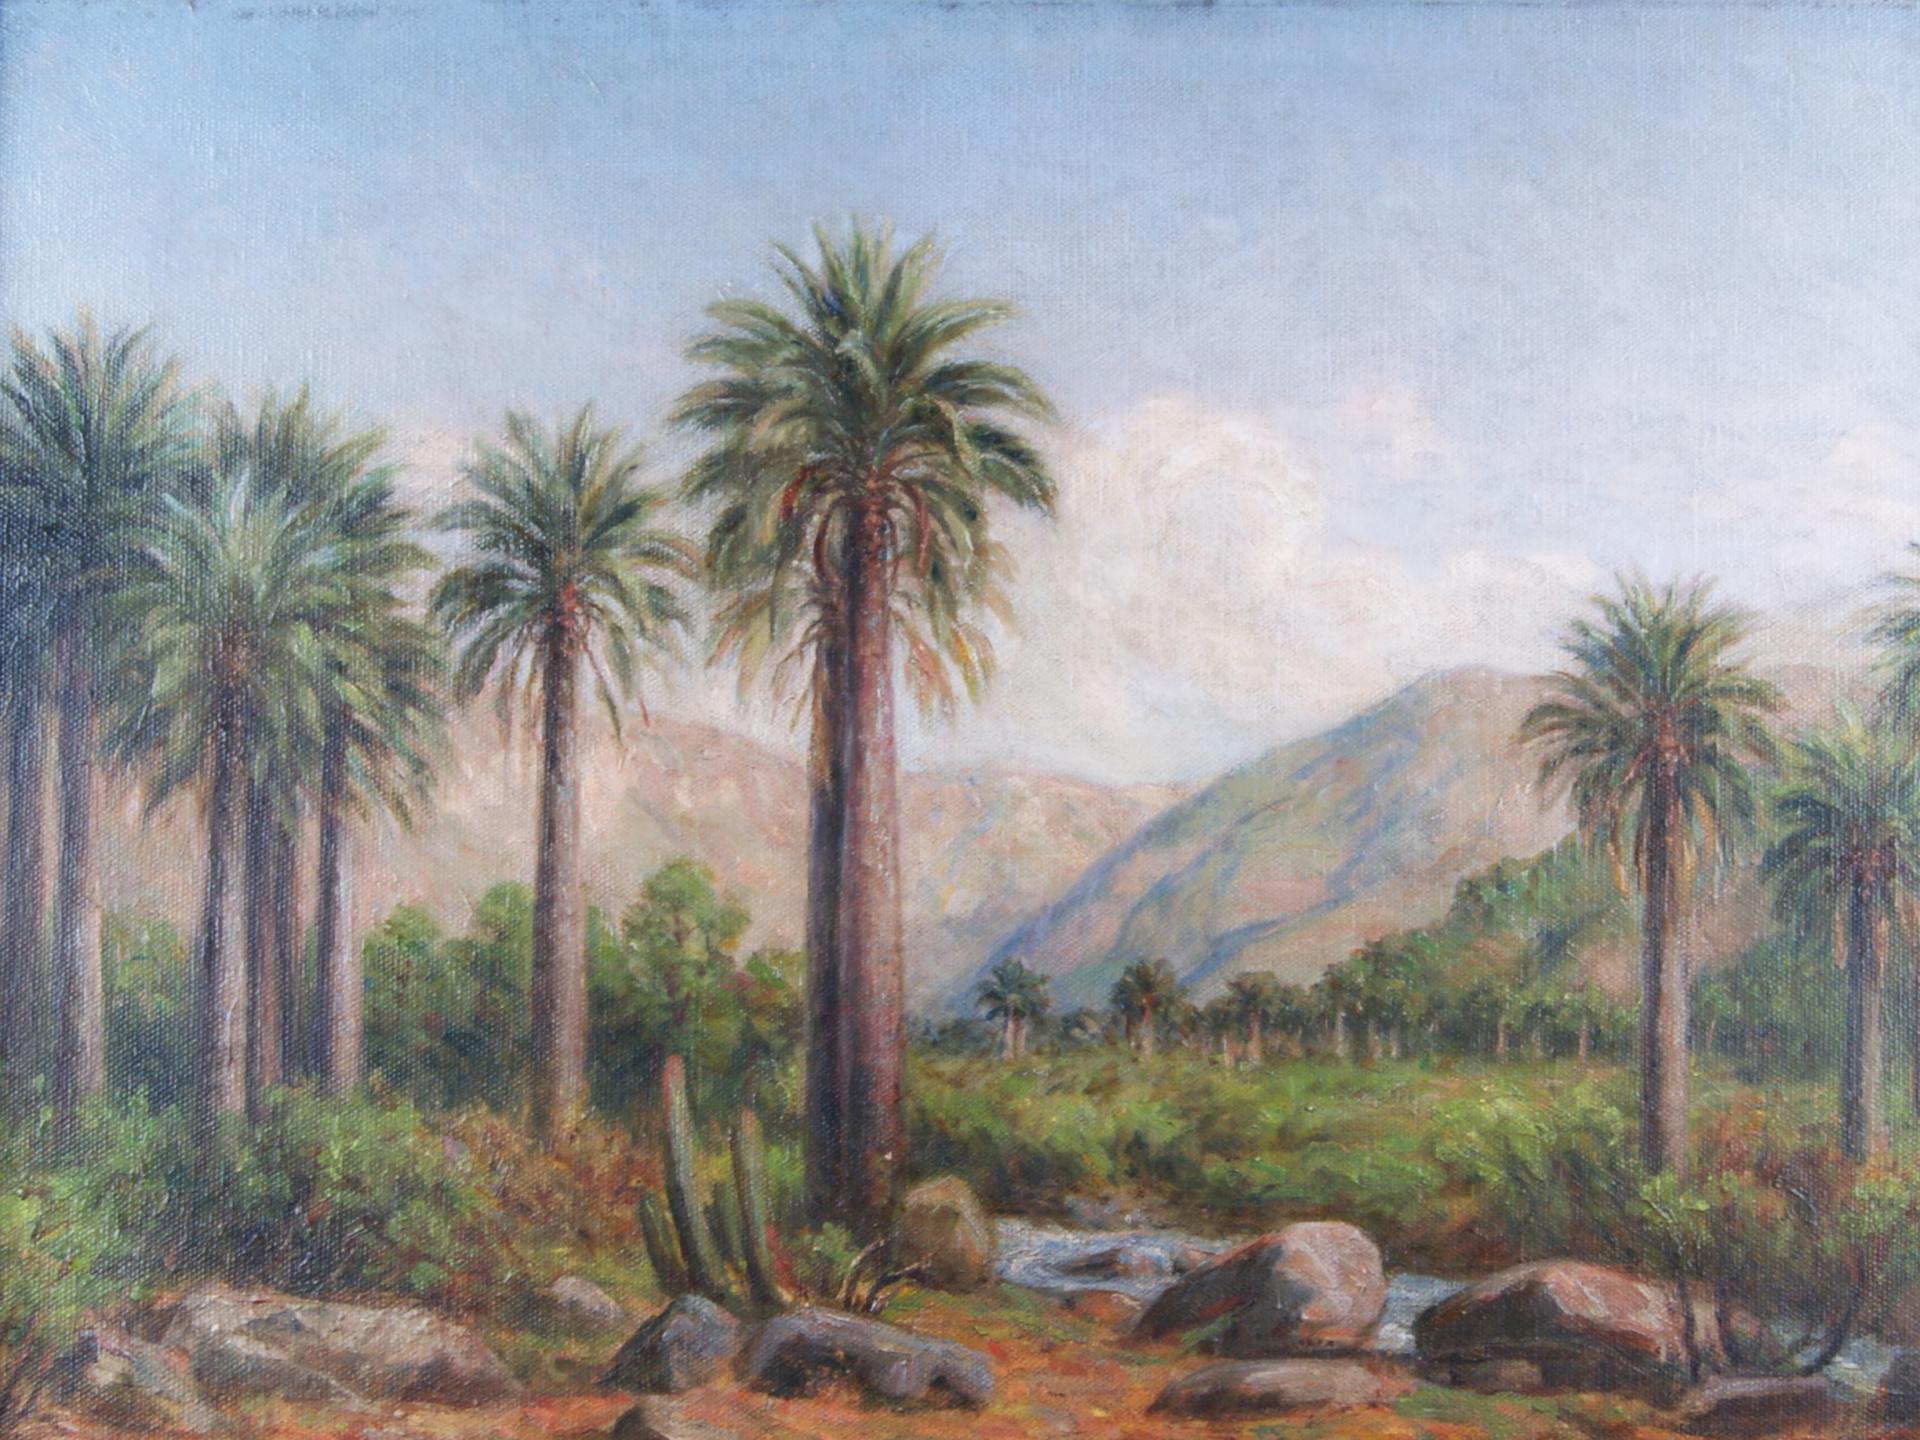 Composición en base a un paisaje con palmas chilenas, arbustos, árboles y arrollo. De fondo pequeños cerros en tonos marrones, cielo y nubes.